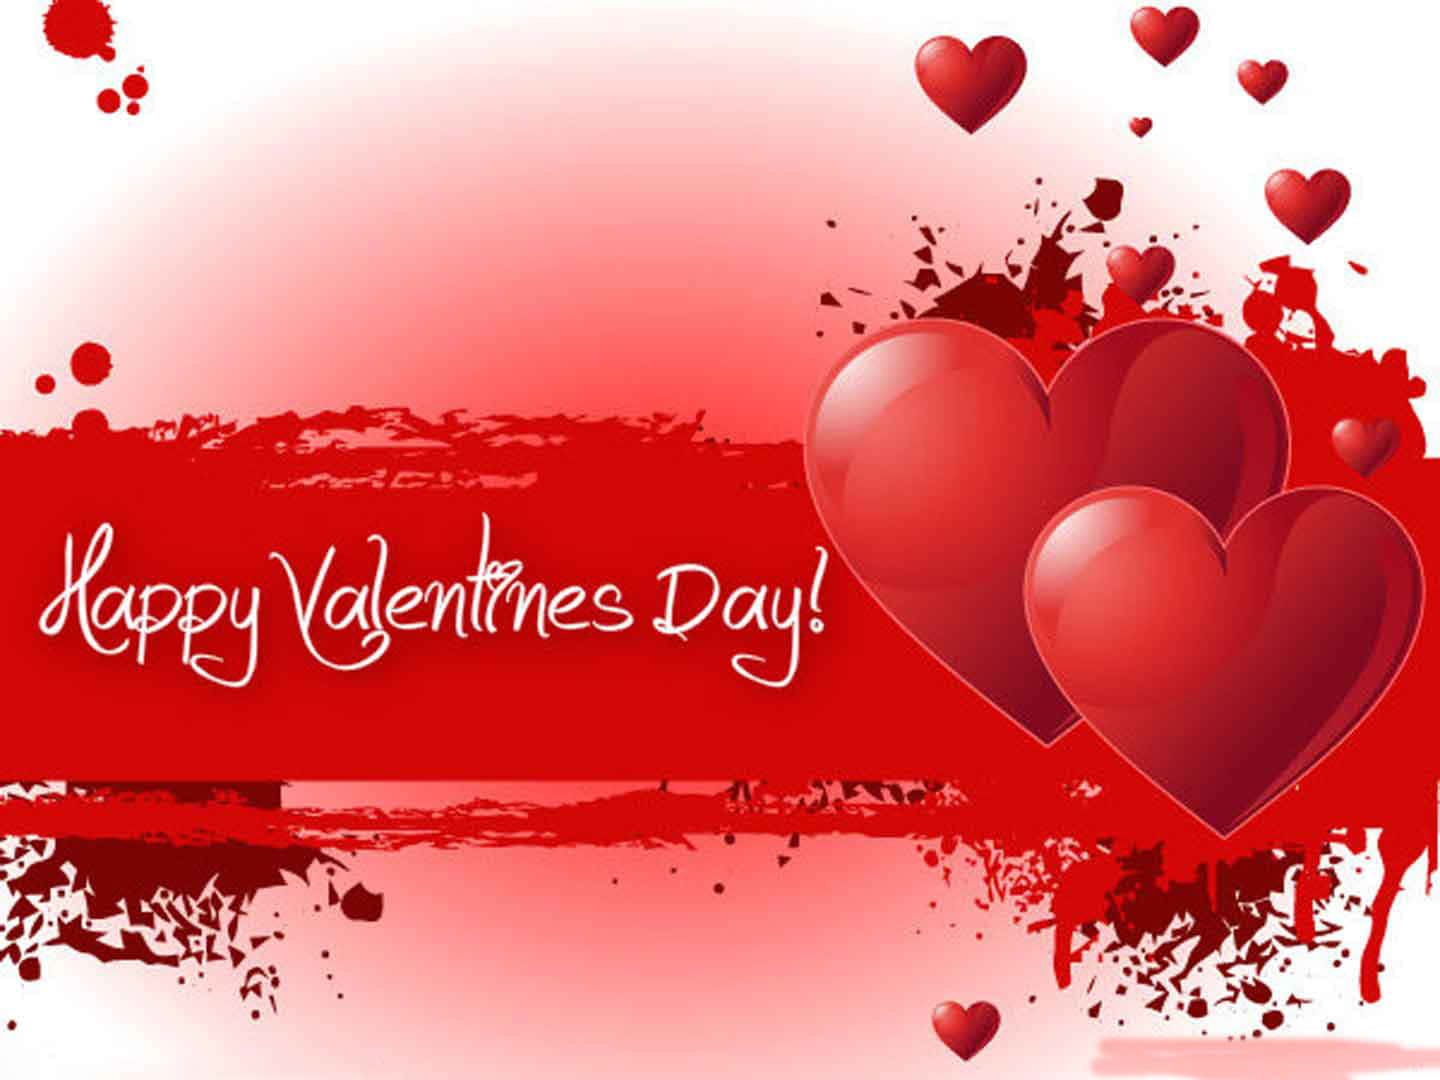 Celebrael Día De San Valentín Con Este Fondo En Forma De Corazón Rojo Y Rosa.